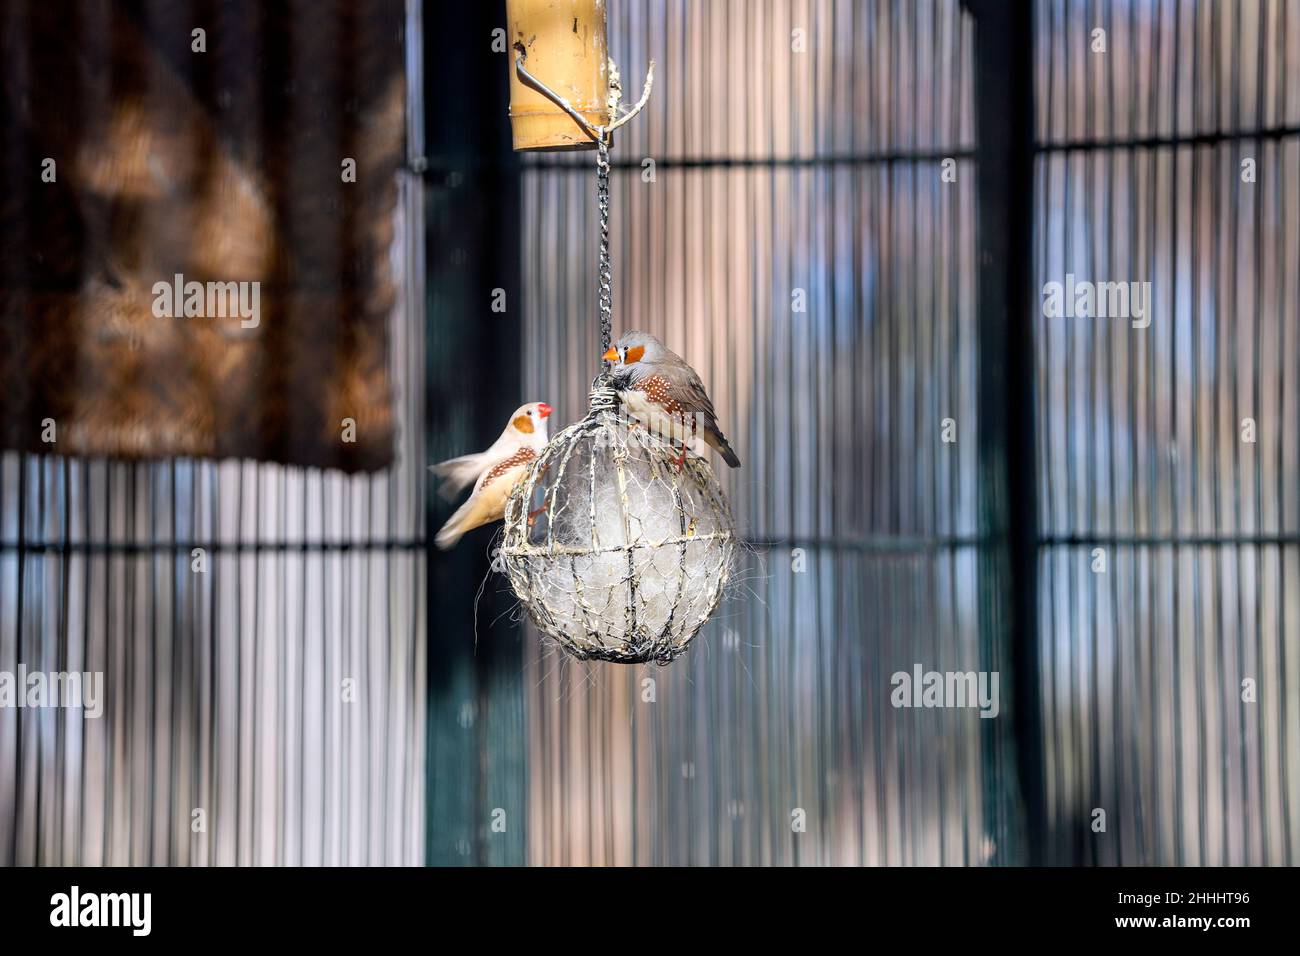 finch zébré australien domestiqué, Taeniopygia castaanotis, Pajarera, cage à oiseaux, jardin de l'île, Aranjuez, Madrid, Espagne Banque D'Images